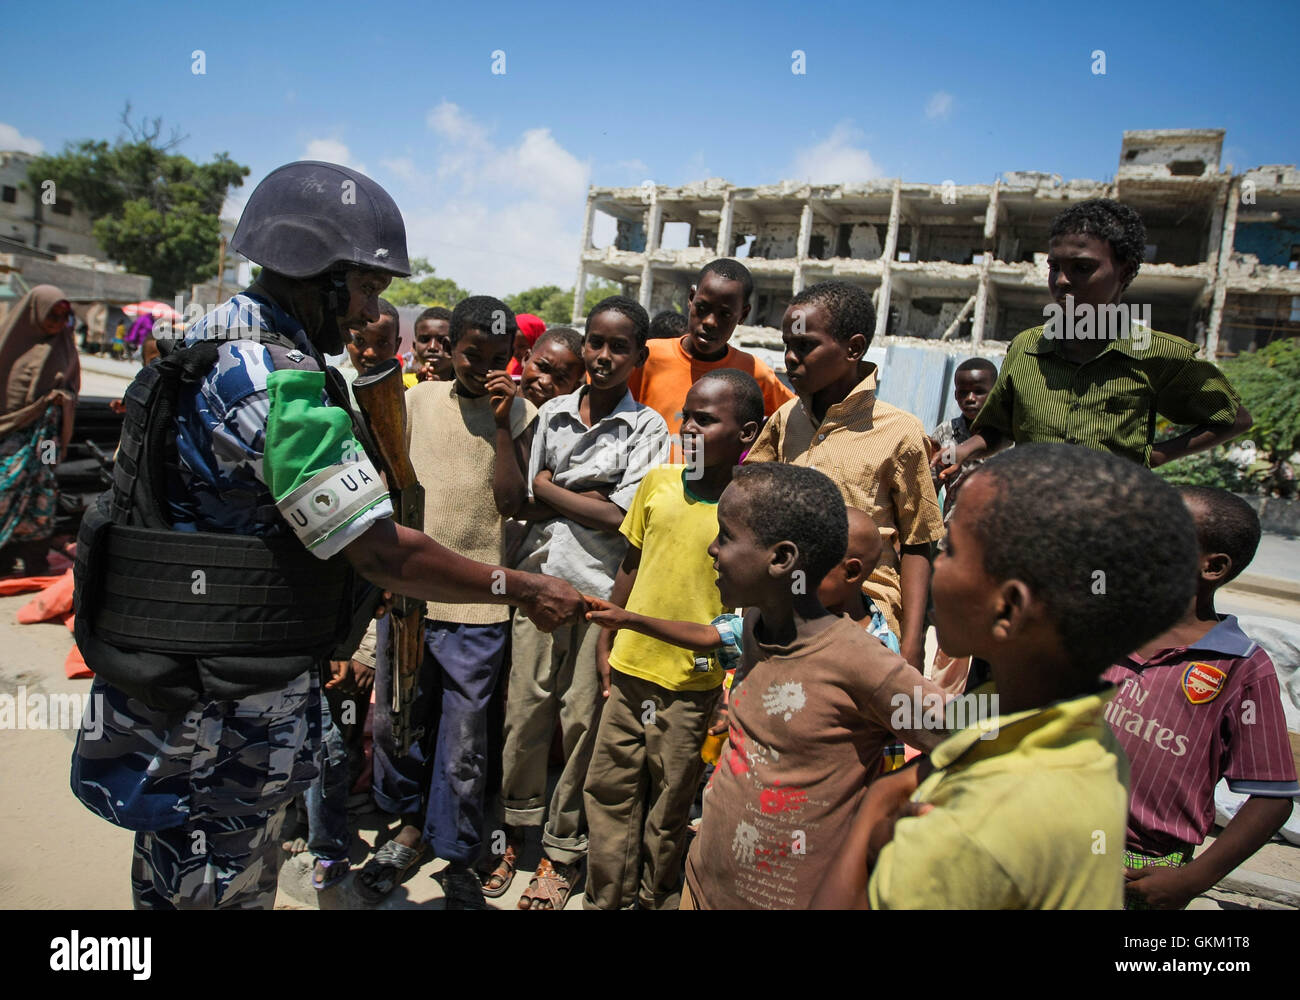 SOMALIA, MOGADISHU: En un panfleto foto tomada y liberado por el Grupo Africano Europea-estados unidas, Equipo de Apoyo a la información 09 de noviembre, un oficial de la policía de Uganda que sirve como parte de una unidad de policía constituida (FPU), con la misión de la unión de la Unión Africana en Somalia (AMISOM) se da la mano con un grupo de niños somalíes durante una patrulla a pie en la Kaa'ran, distrito de la capital somalí de Mogadishu. La AMISOM FPUs están colaborando con sus homólogos de la Policía Somalí (SPF) para ayudar a proporcionar seguridad en Mogadishu, además de la capacitación y asesoramiento de la SPF en técnicas policiales y prácticas. AU-ONU Foto de stock